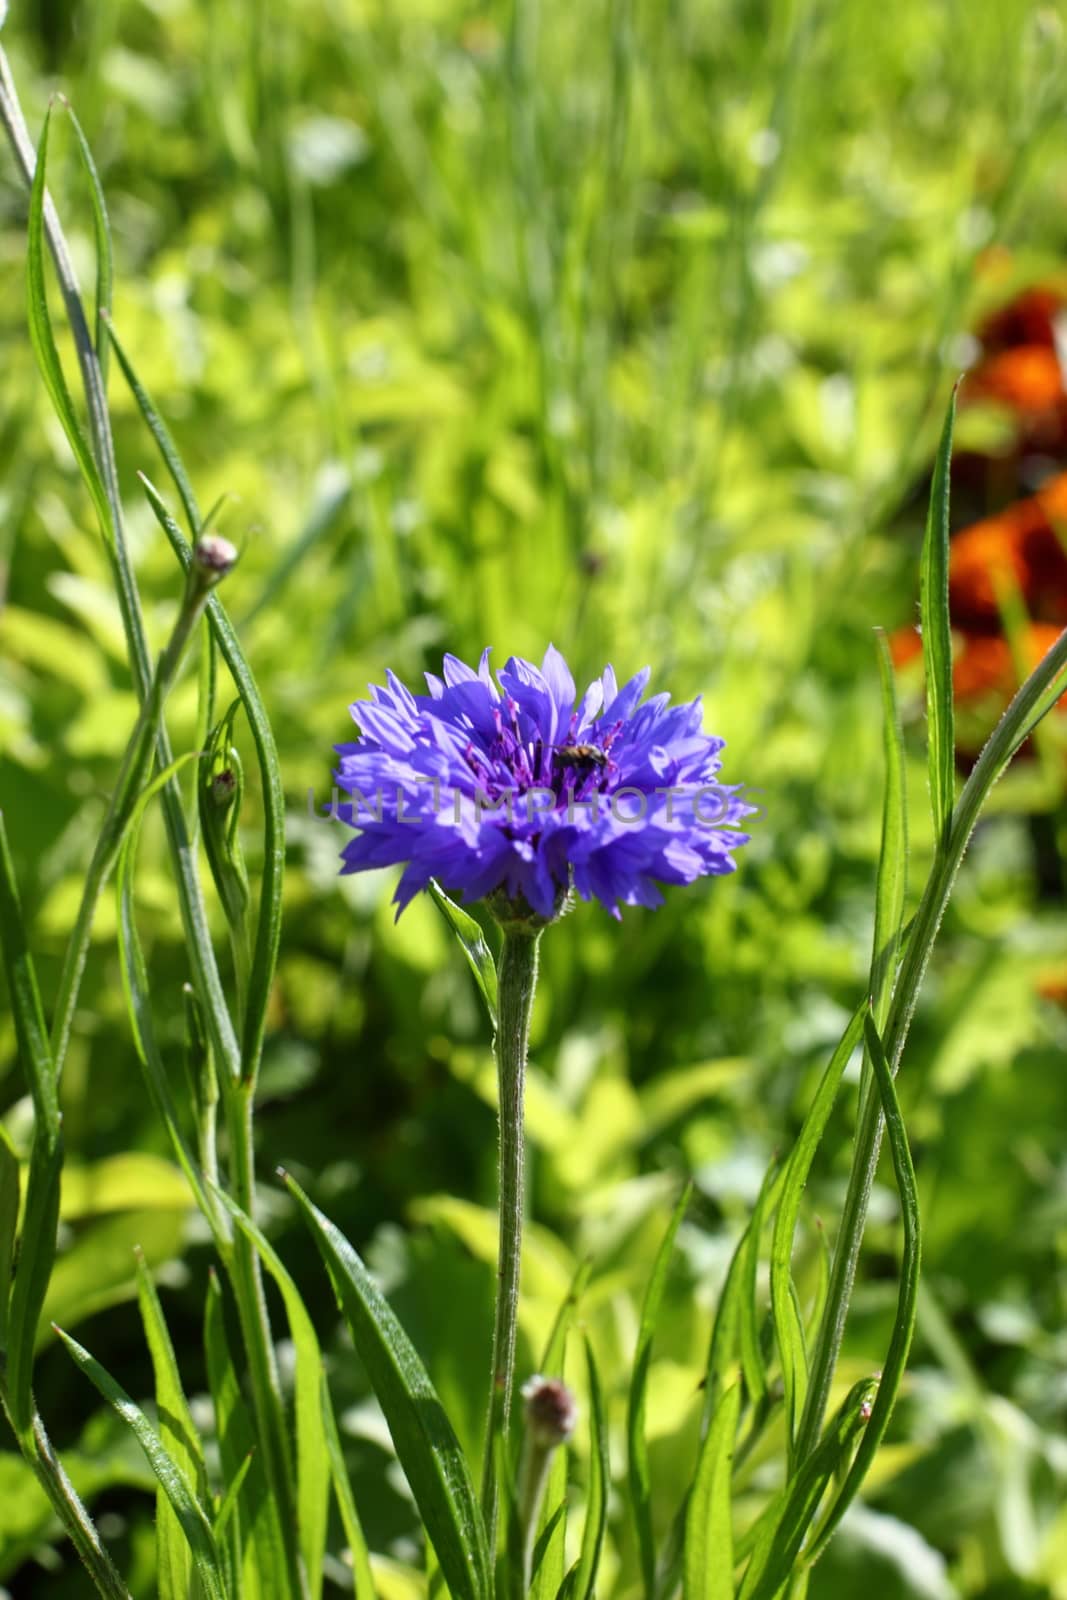 Blue cornflower in garden by Metanna